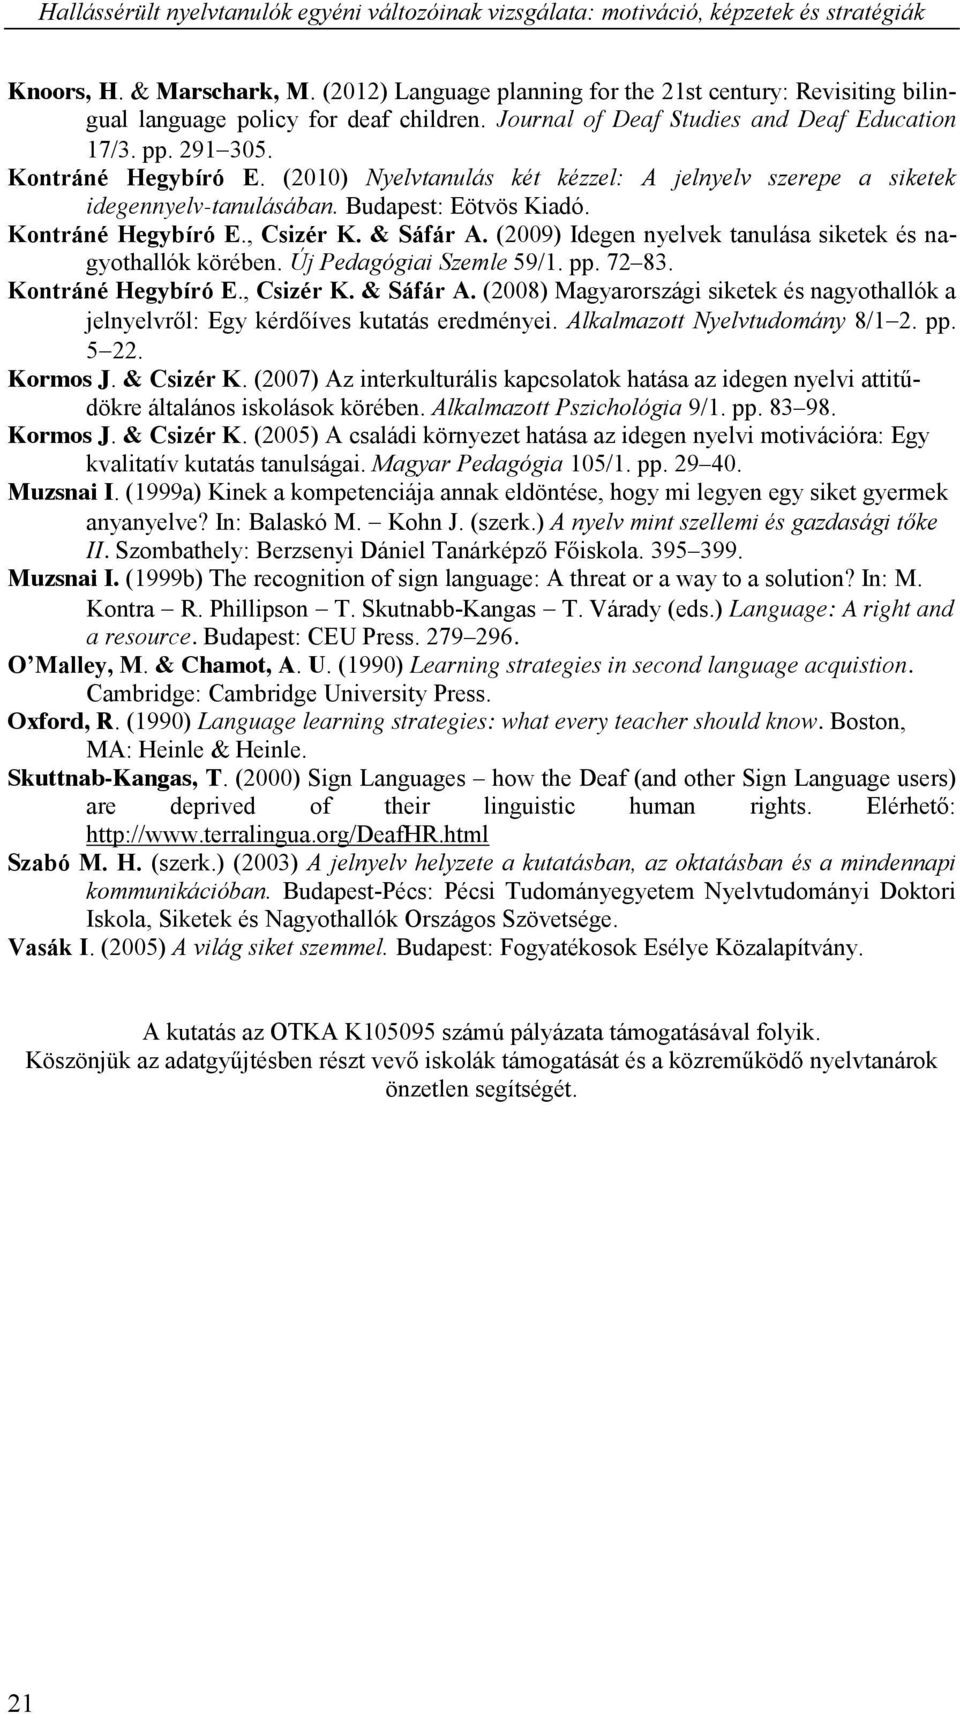 (2010) Nyelvtanulás két kézzel: A jelnyelv szerepe a siketek idegennyelv-tanulásában. Budapest: Eötvös Kiadó. Kontráné Hegybíró E., Csizér K. & Sáfár A.